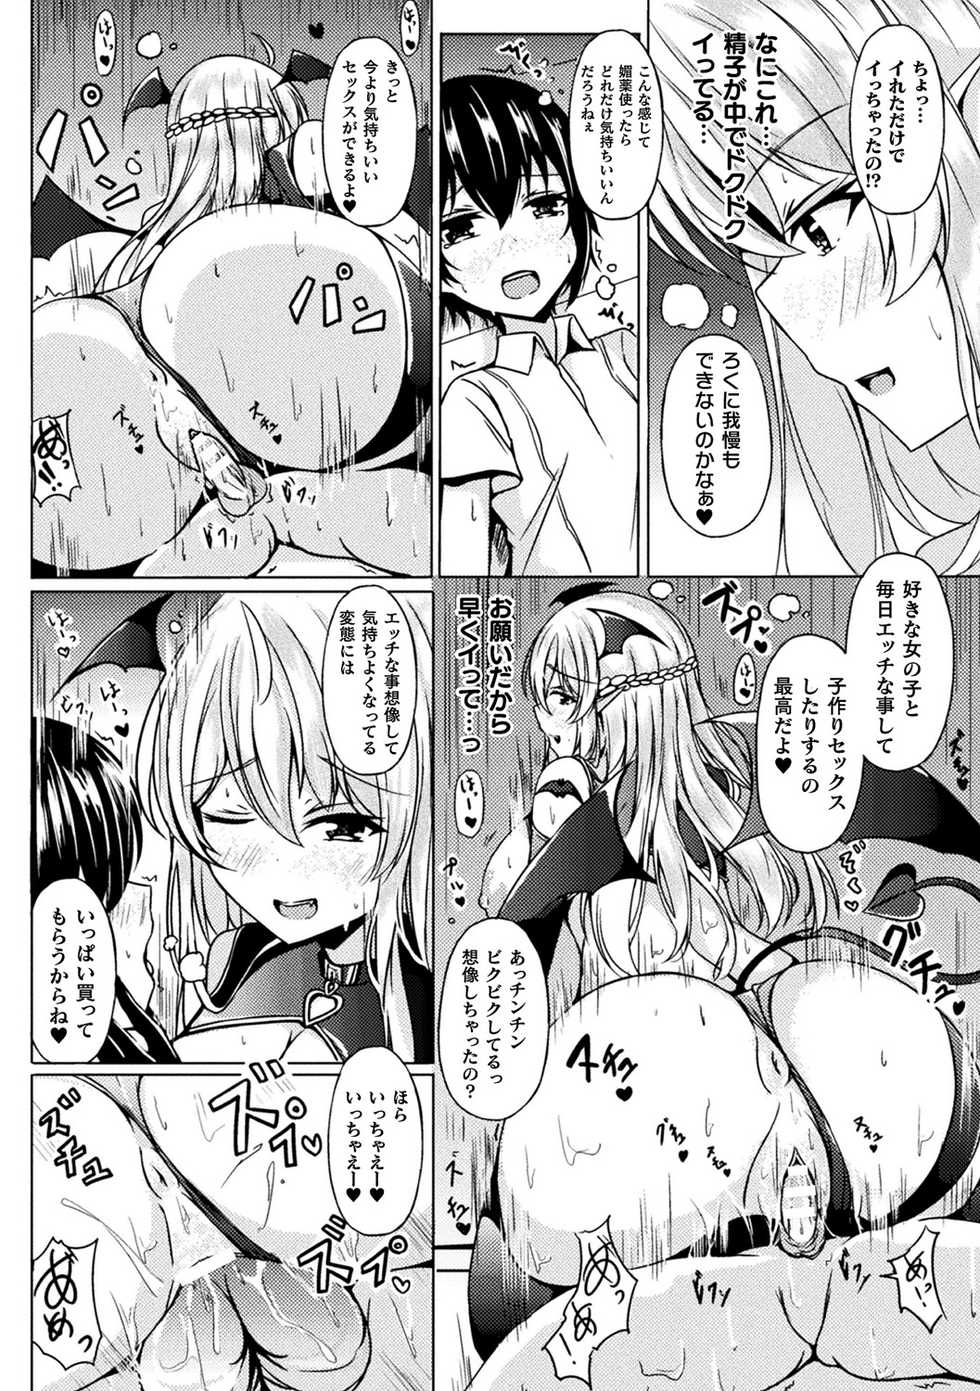 [Anthology] Bessatsu Comic Unreal Ponkotsu Fantasy Heroine H ~Doji o Funde Gyakuten Saretari Ero Trap ni Hamattari!?~ Vol. 2 [Digital] - Page 32